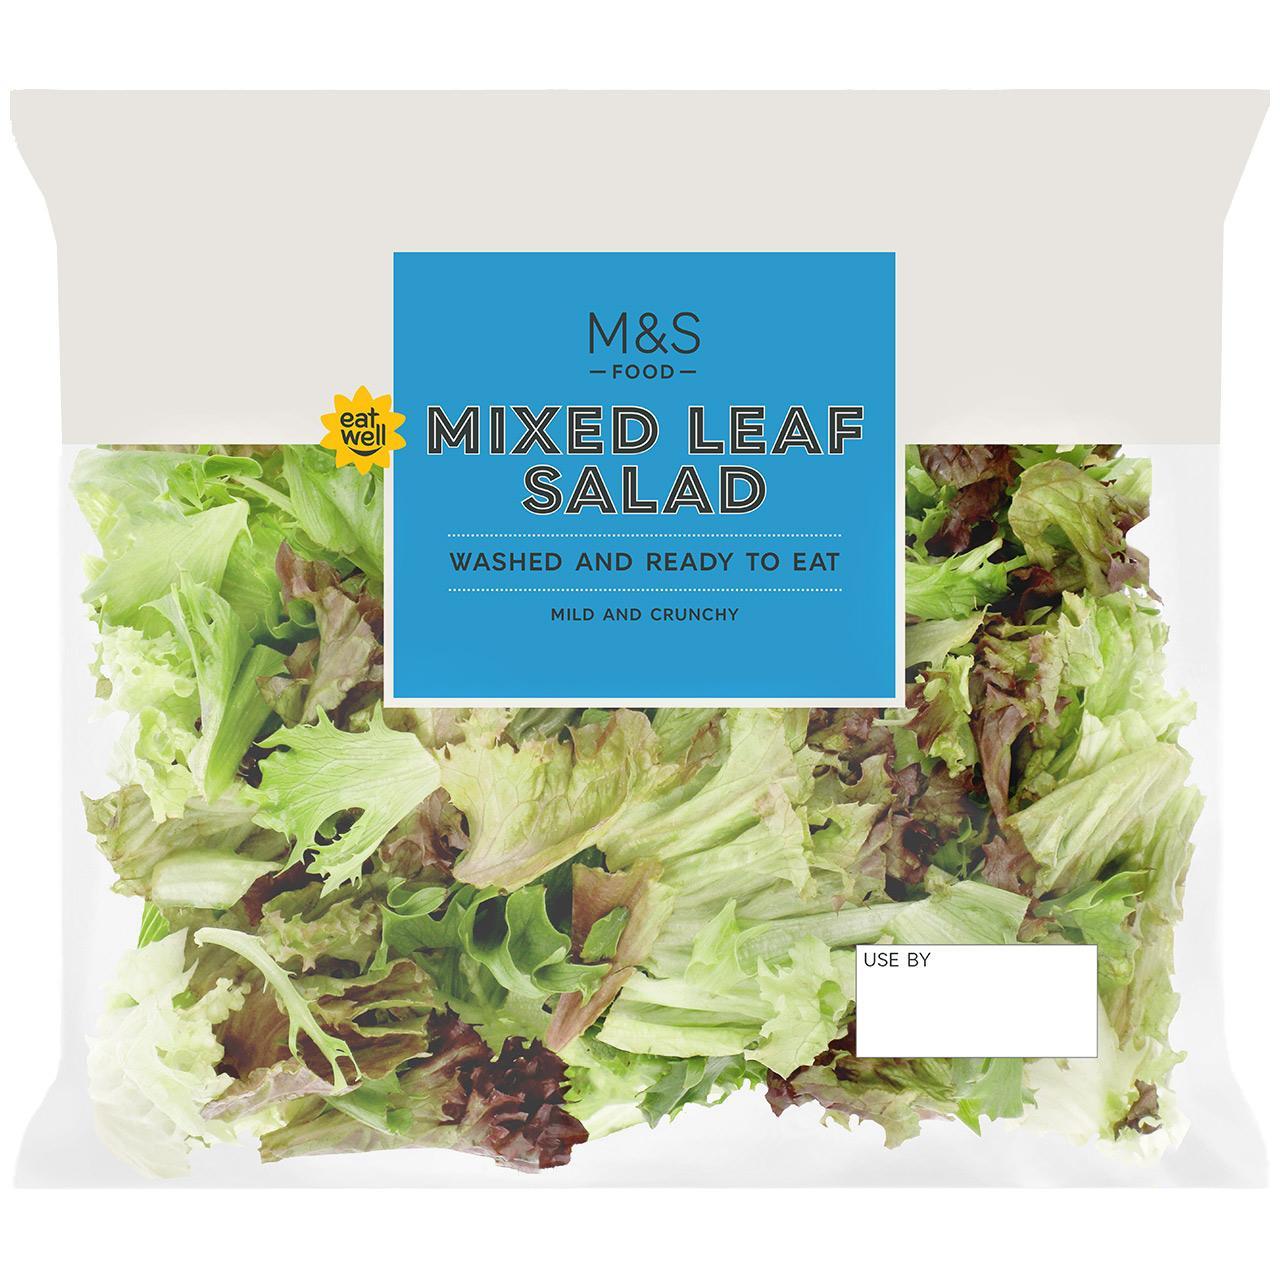 M&S Mixed Leaf Salad